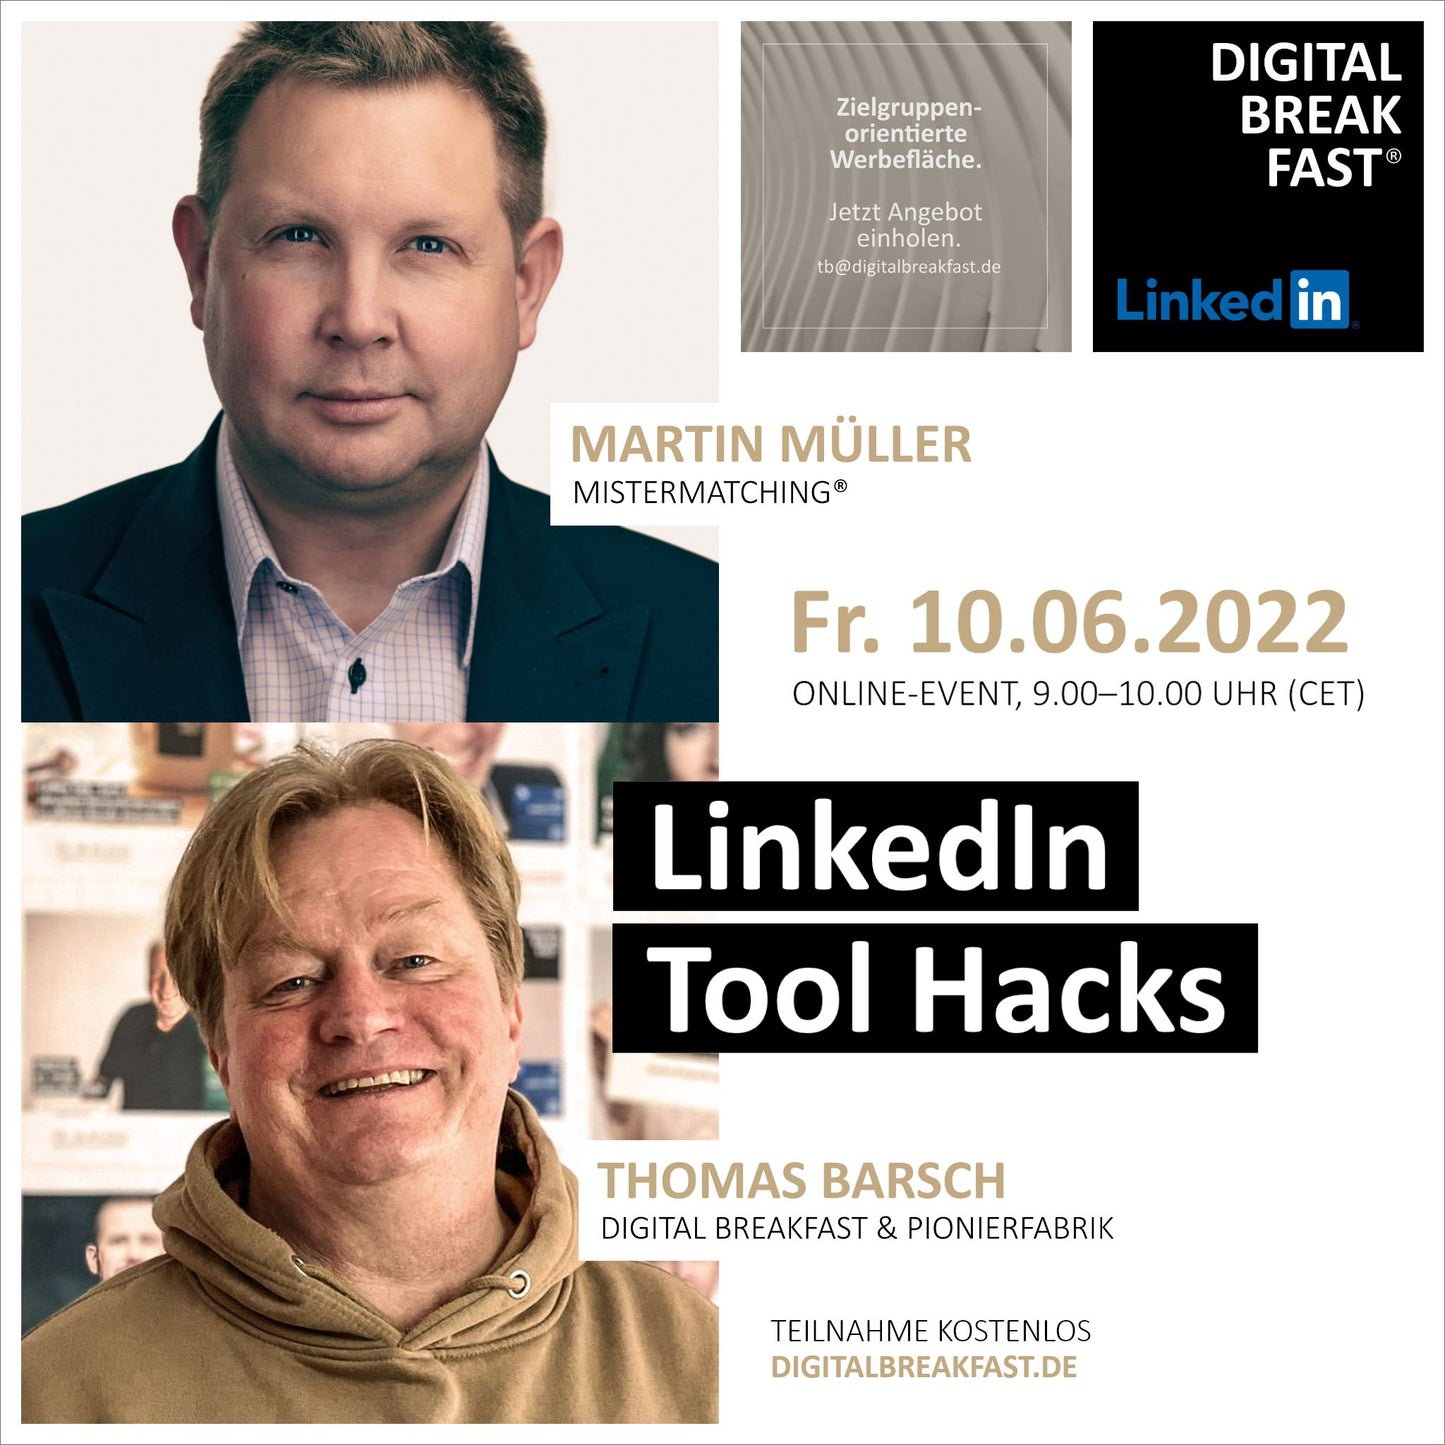 PRÄSENTATION | 10.06.2022 | "LinkedIn Tool Hacks" mit Martin Müller | MisterMatching® & Thomas Barsch | DIGITAL BREAKFAST